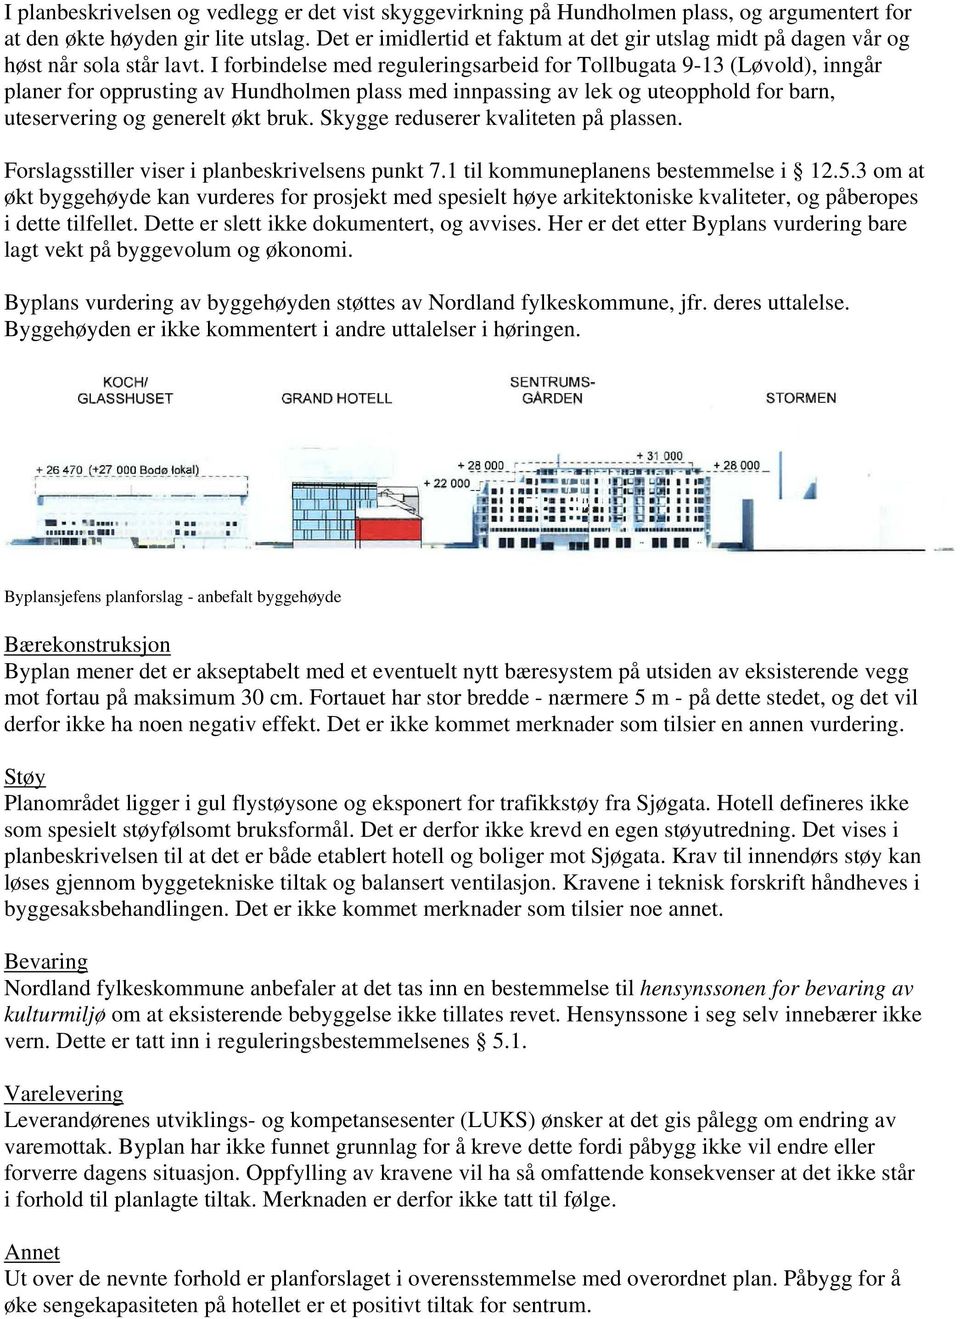 I forbindelse med reguleringsarbeid for Tollbugata 9-13 (Løvold), inngår planer for opprusting av Hundholmen plass med innpassing av lek og uteopphold for barn, uteservering og generelt økt bruk.